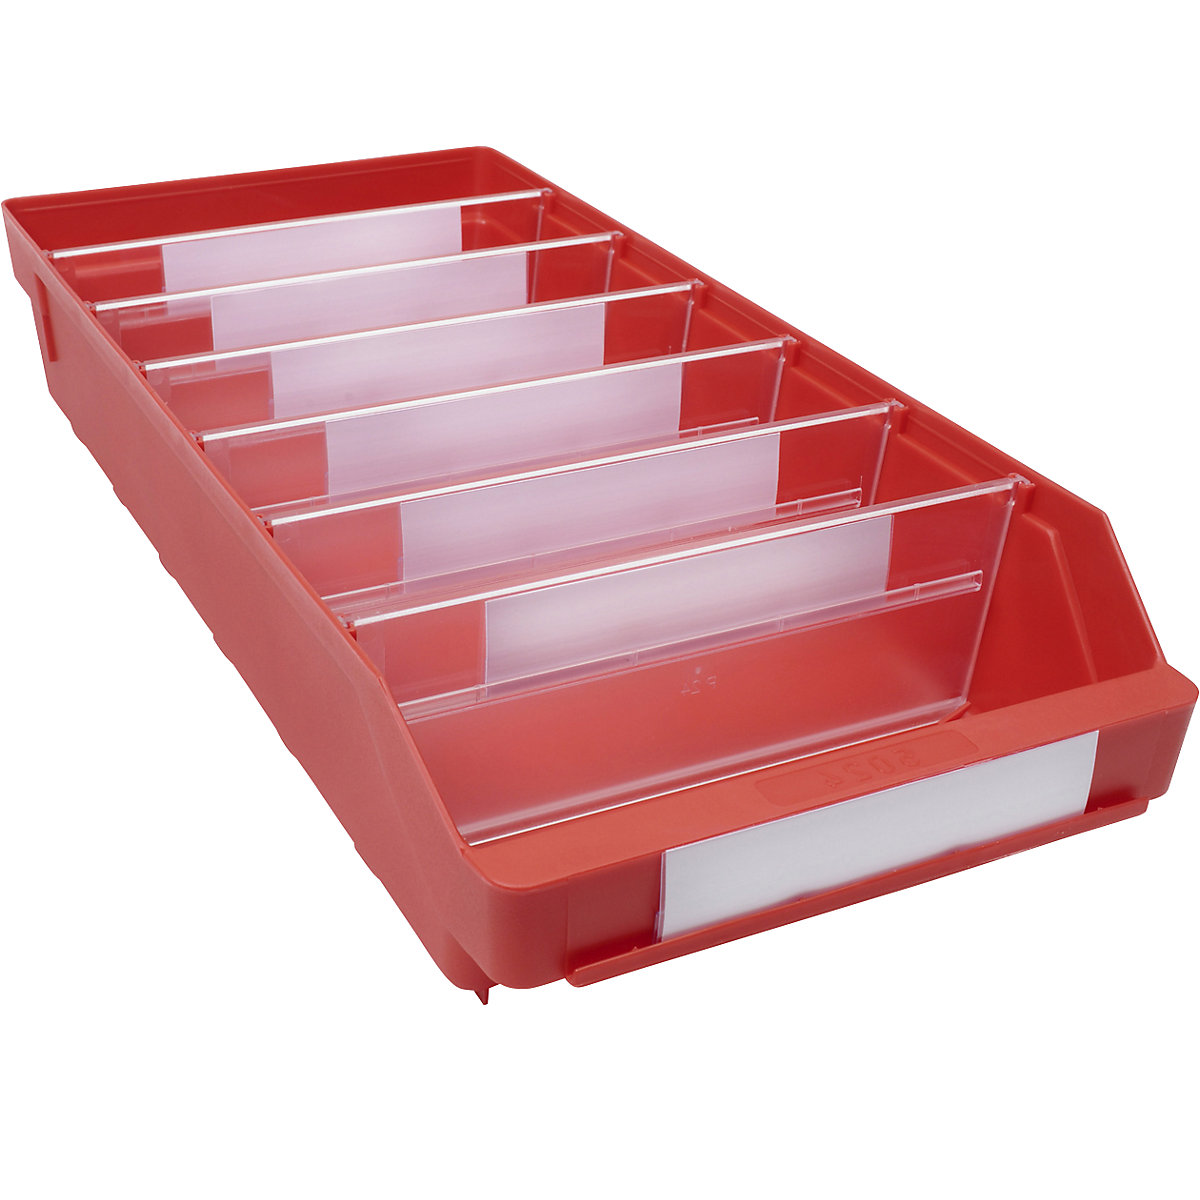 Regalkasten aus hochschlagfestem Polypropylen STEMO, rot, LxBxH 500 x 240 x 95 mm, VE 15 Stk-18